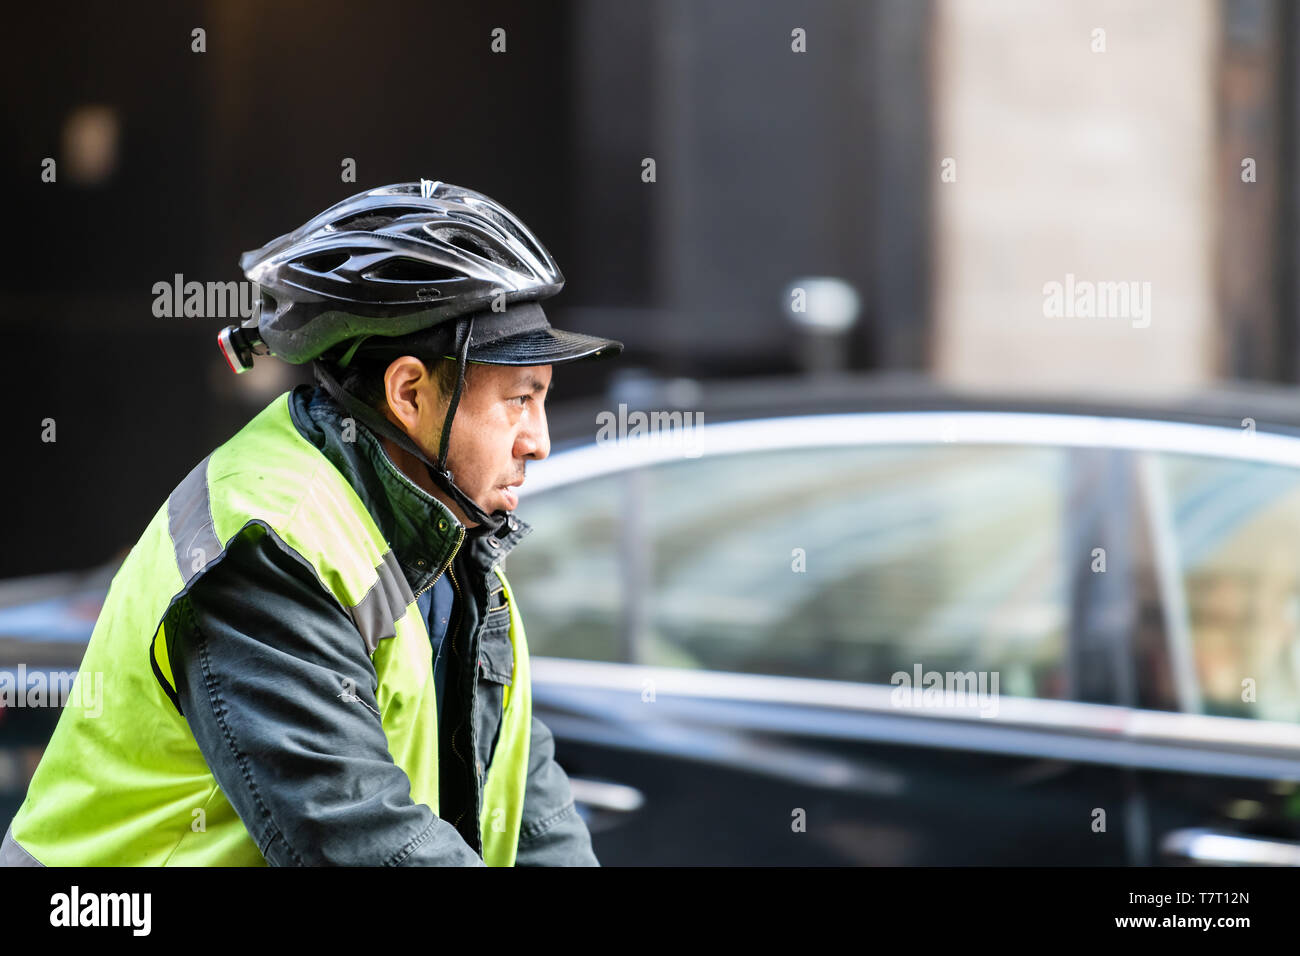 New York City - Aprile 6, 2018: persone uomo sulla bici con casco e canotta in New York Midtown Foto Stock